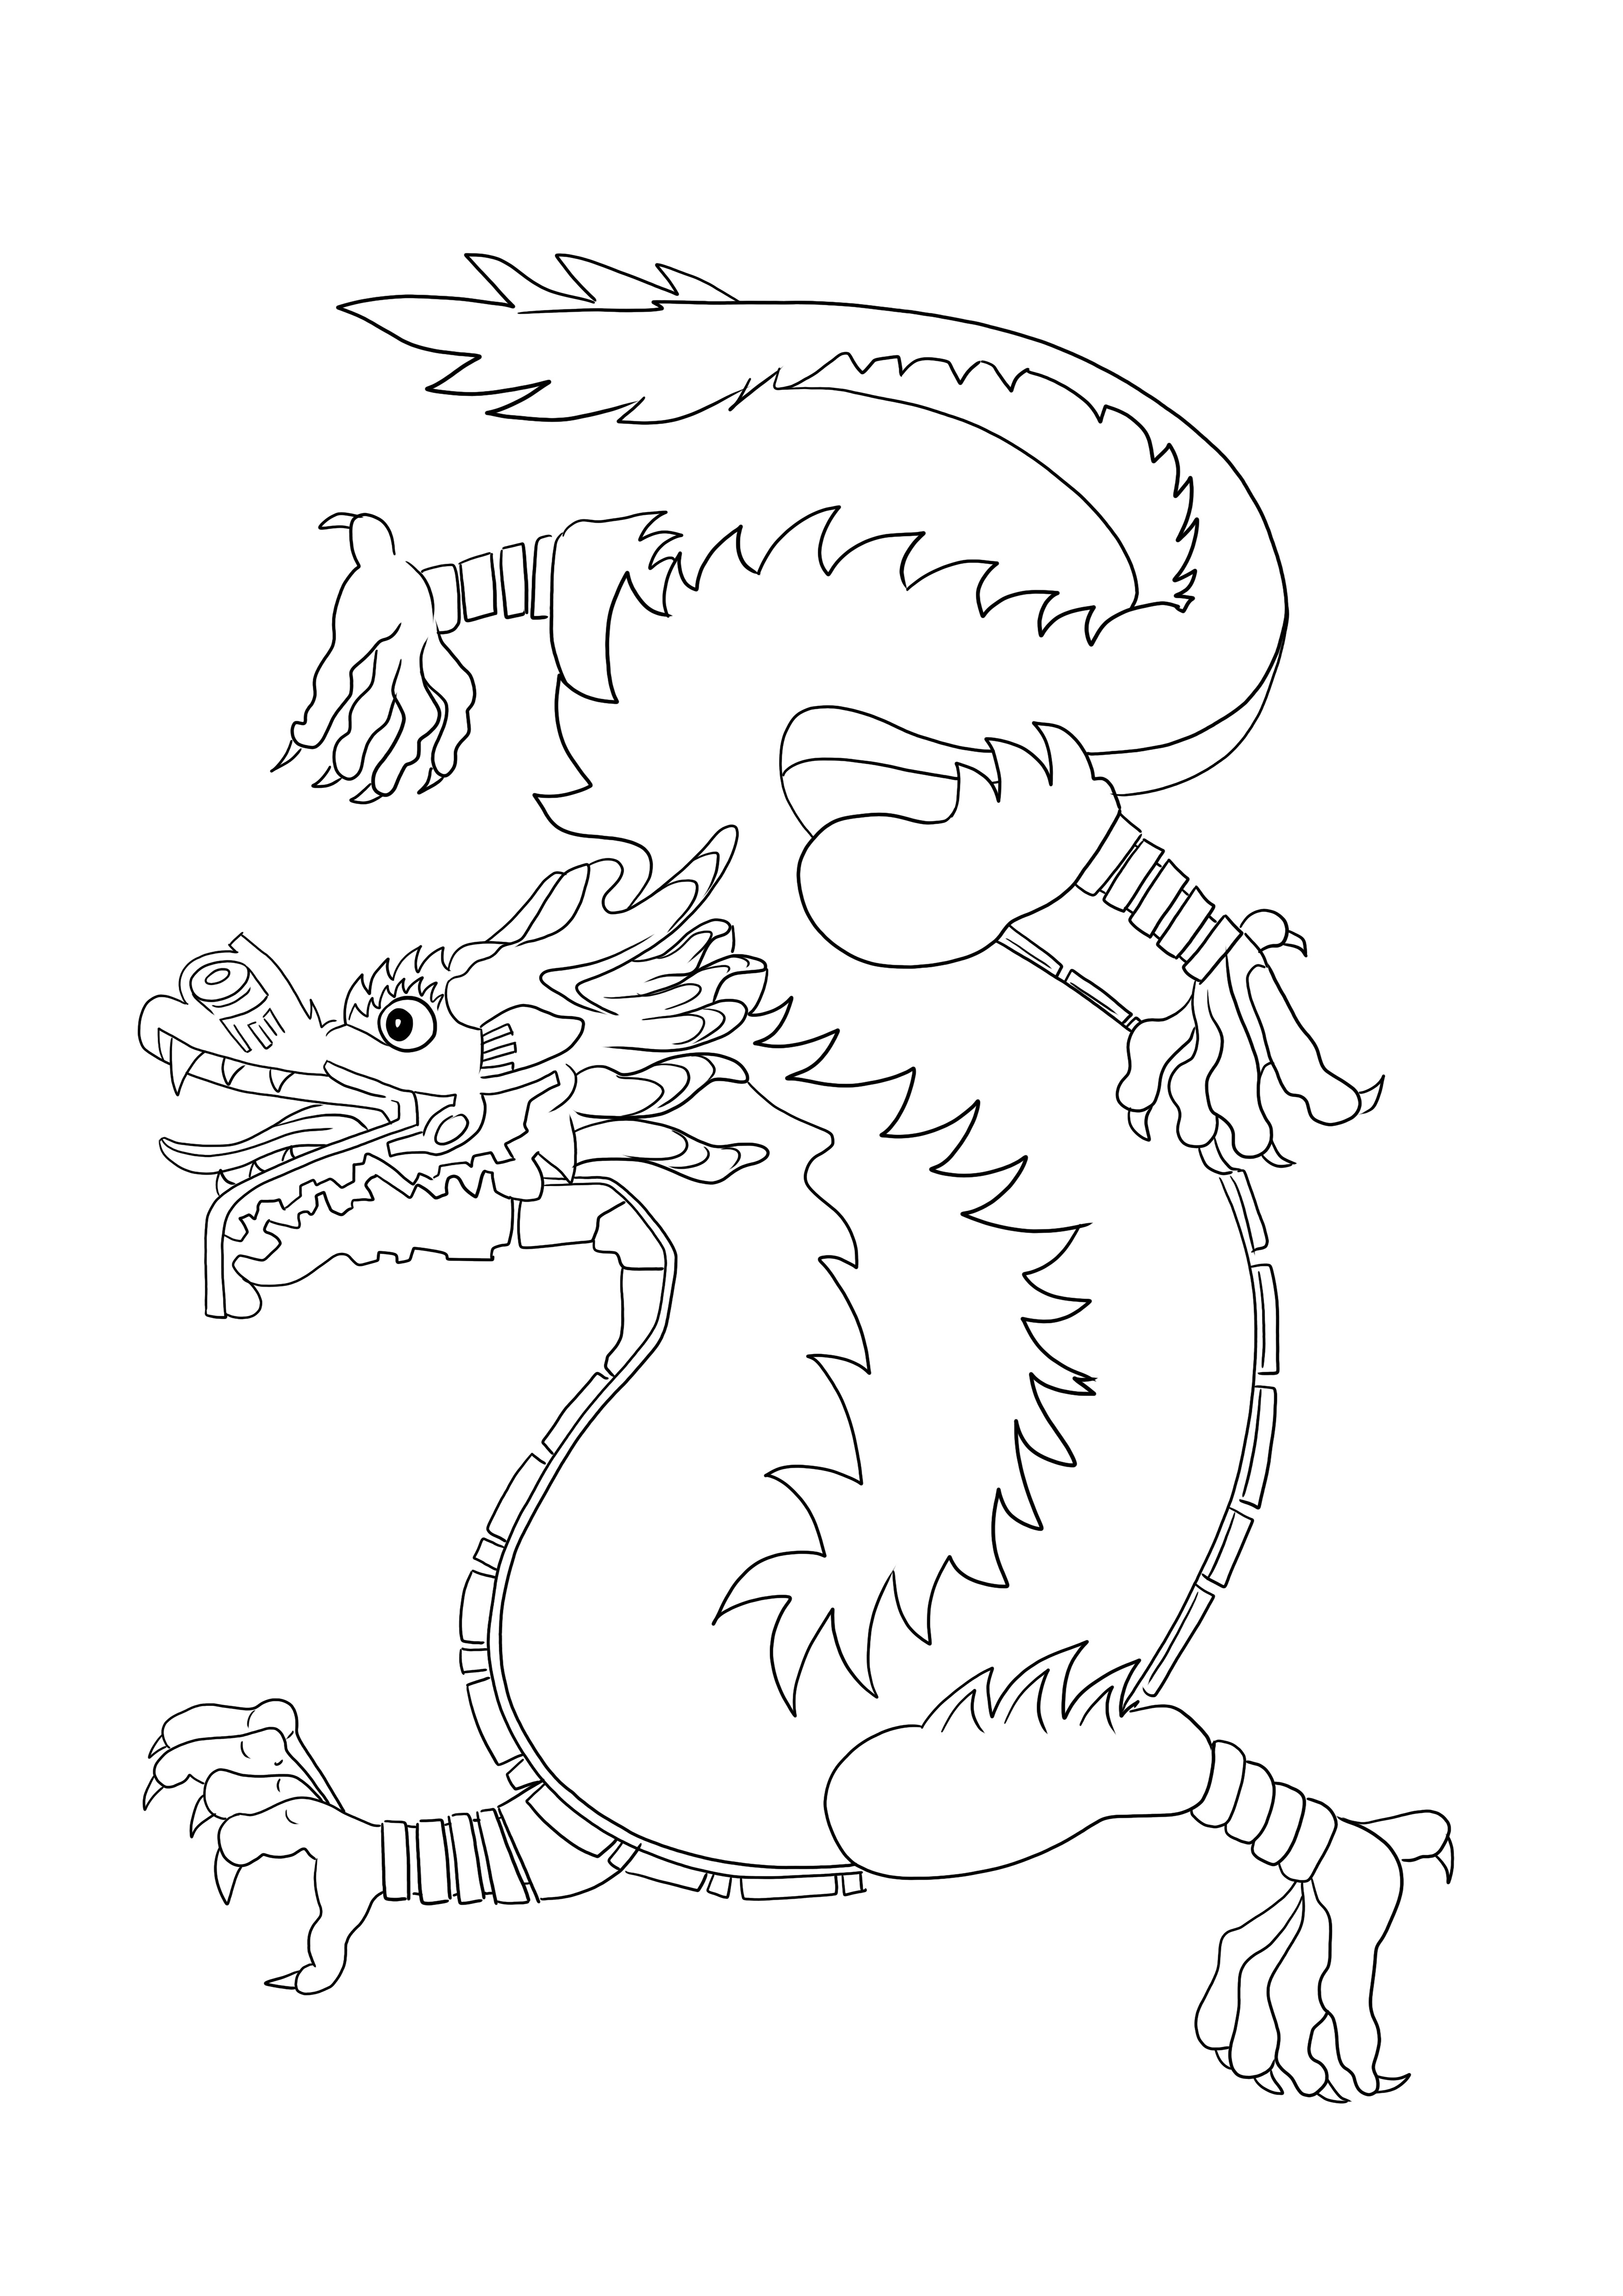 Coloriage Dragon Chinois à imprimer ou télécharger gratuitement pour les enfants